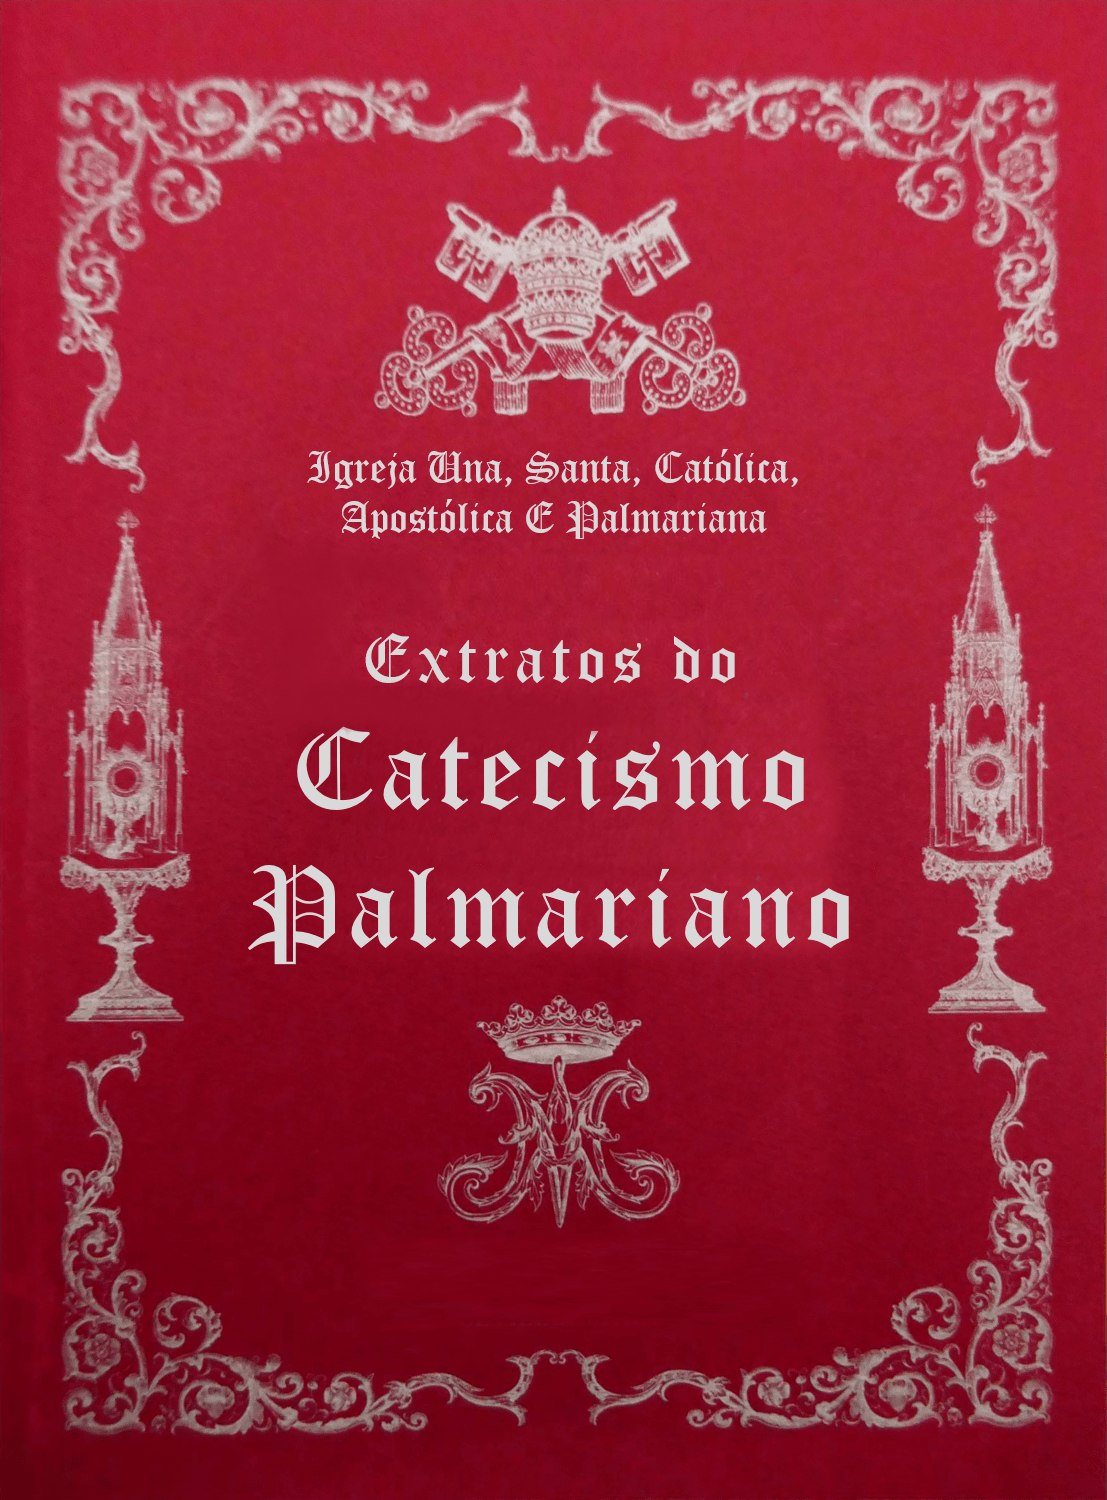  <a href="/wp-content/uploads/2022/06/Extratos-do-Catecismo-Palmariano.pdf?x71832" title="Extractos do Catecismo Palmariano">Extractos do Catecismo Palmariano<br><br>Ver mais